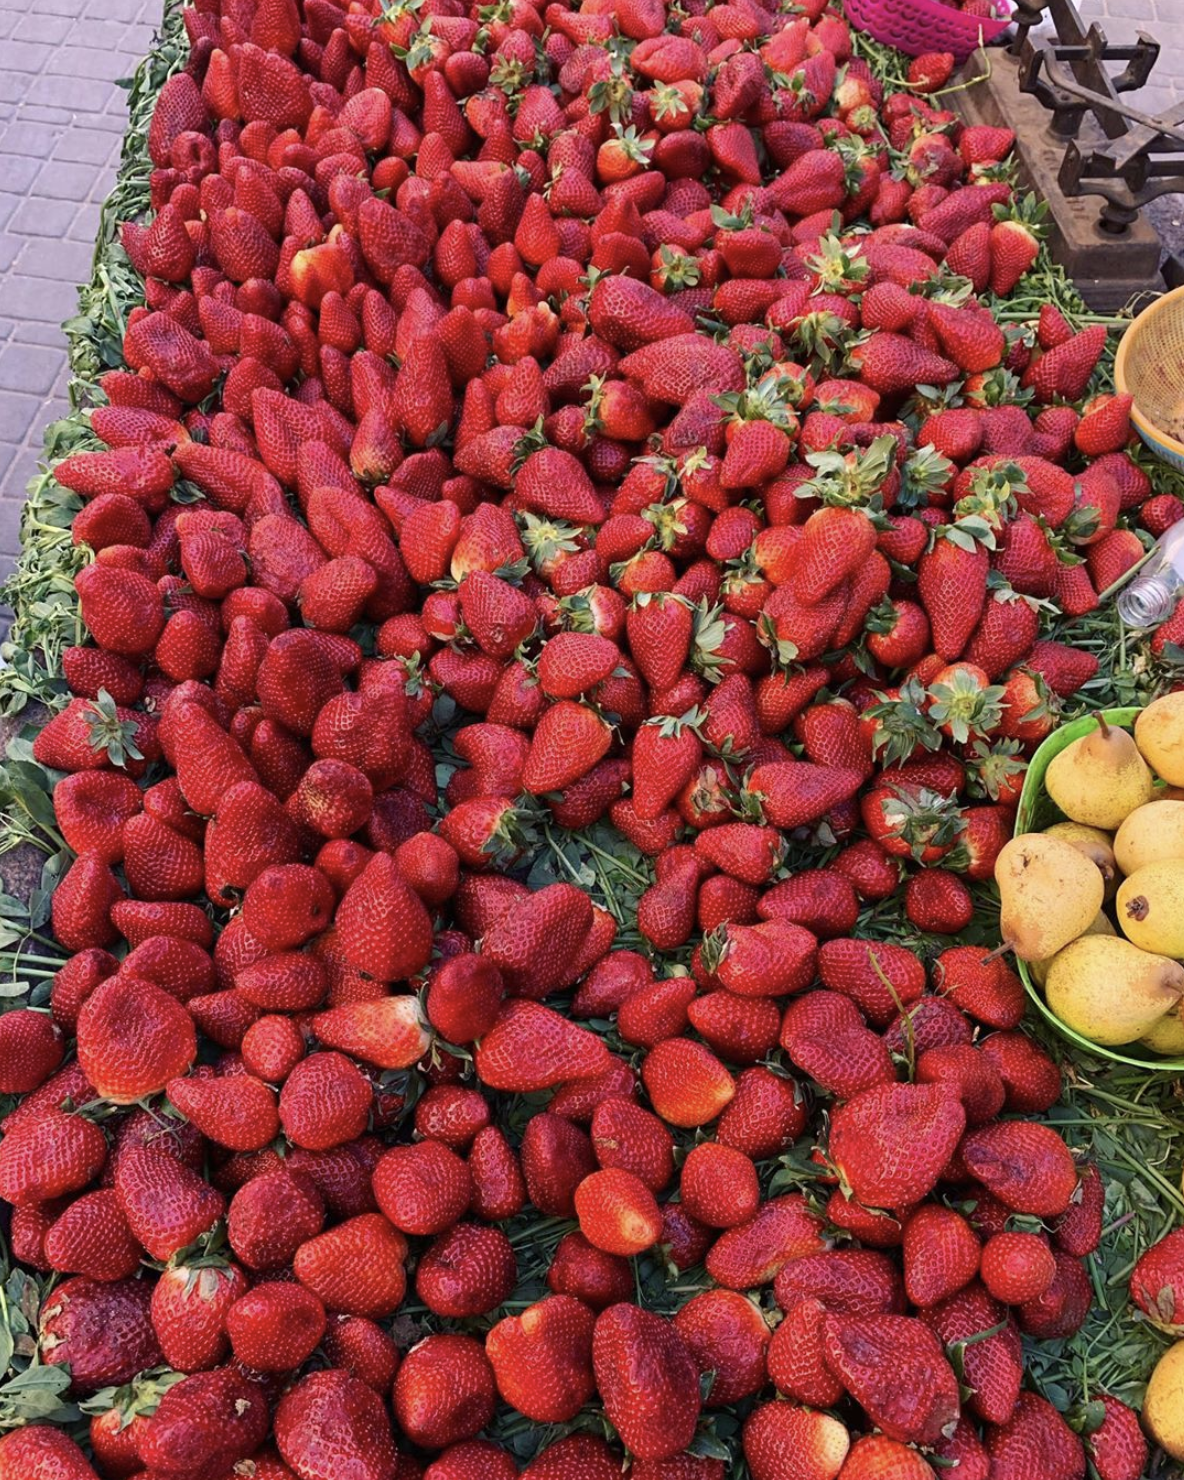 Strawberry season in Marrakech